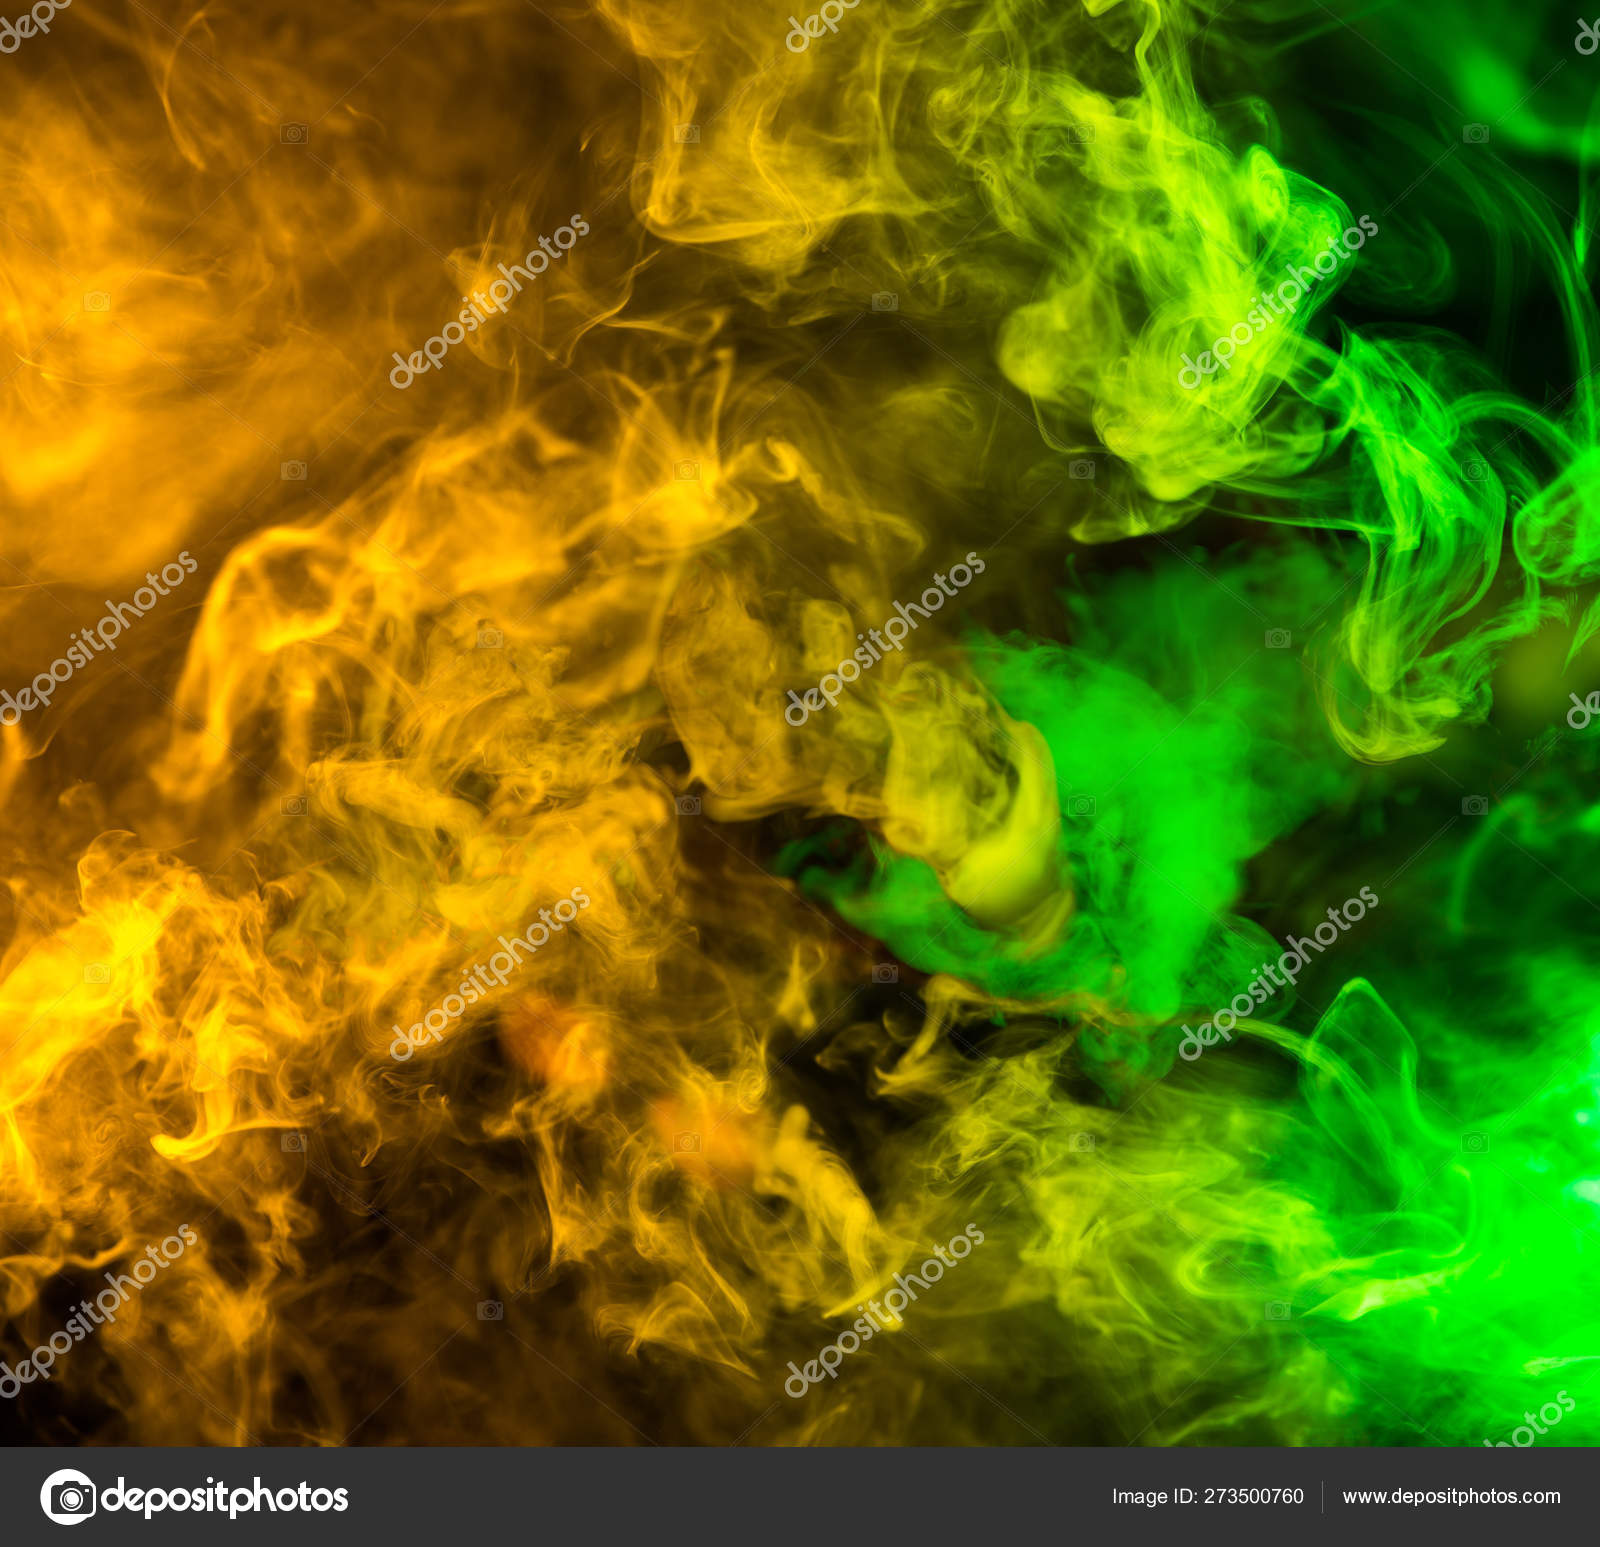 Hơi khói nhè nhẹ lan tỏa khắp khung hình, kèm theo những màu sắc đặc biệt. Hãy đến xem hình ảnh liên quan để cảm nhận được sự khác biệt và độc đáo này.